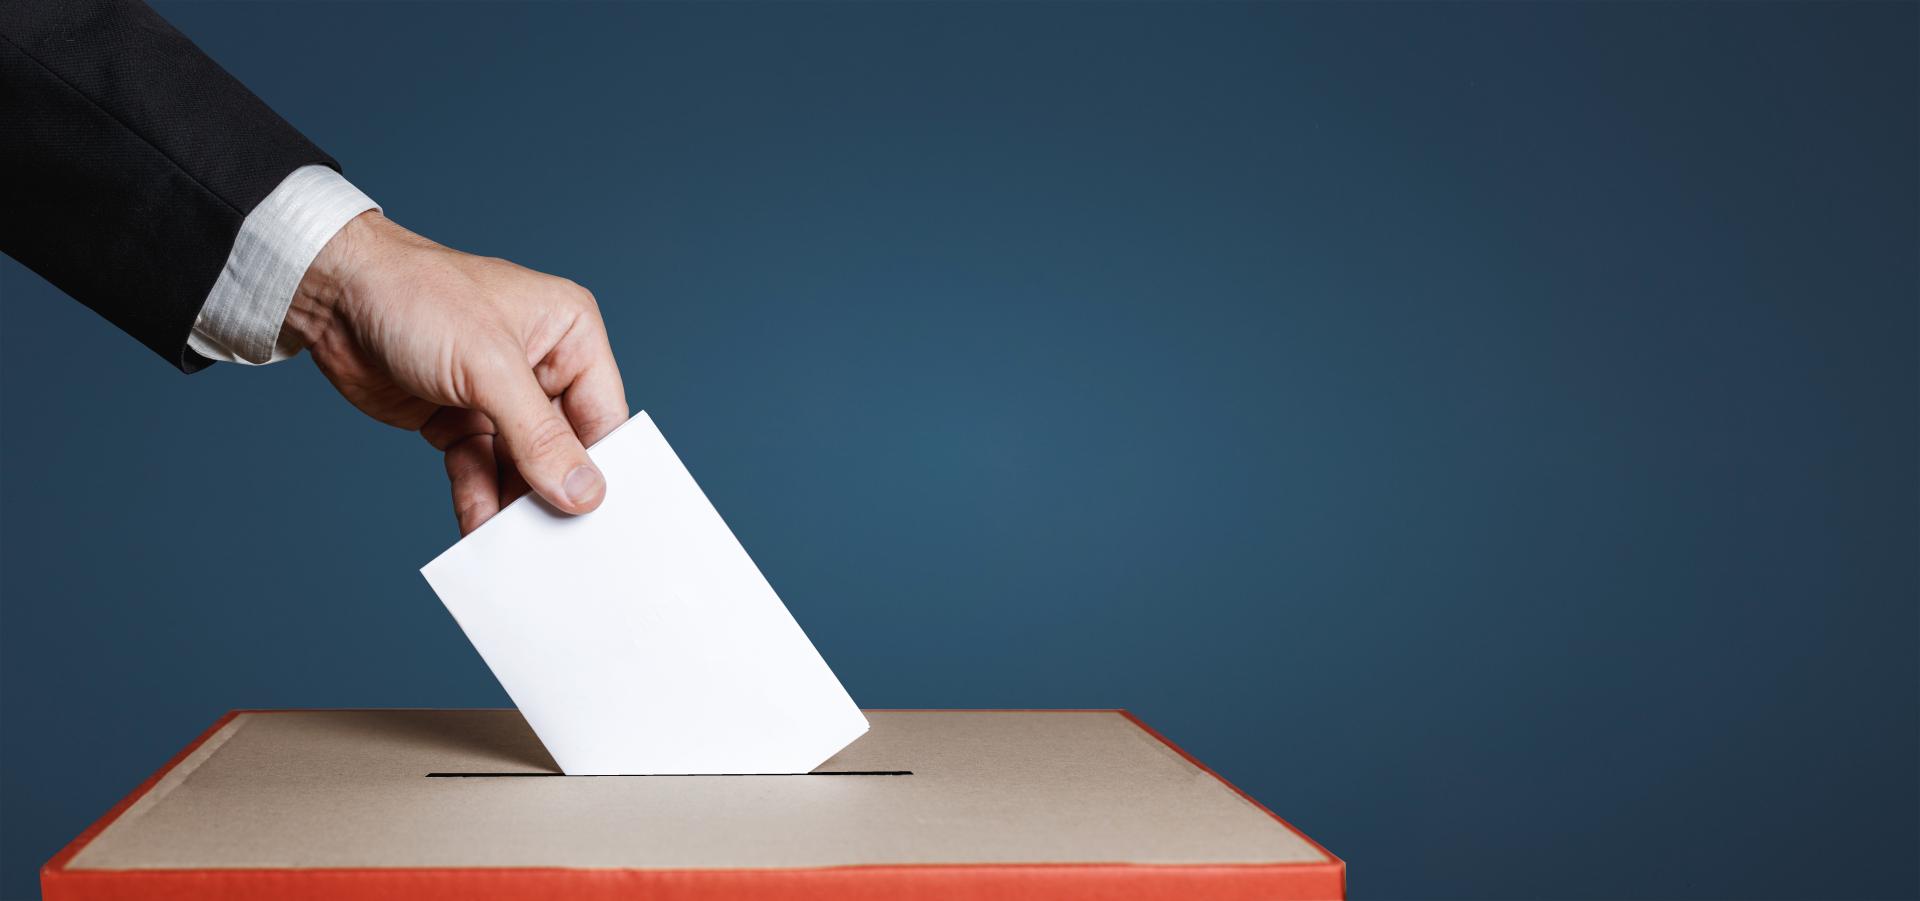 Main mettant un bulletin dans une urne électorale 